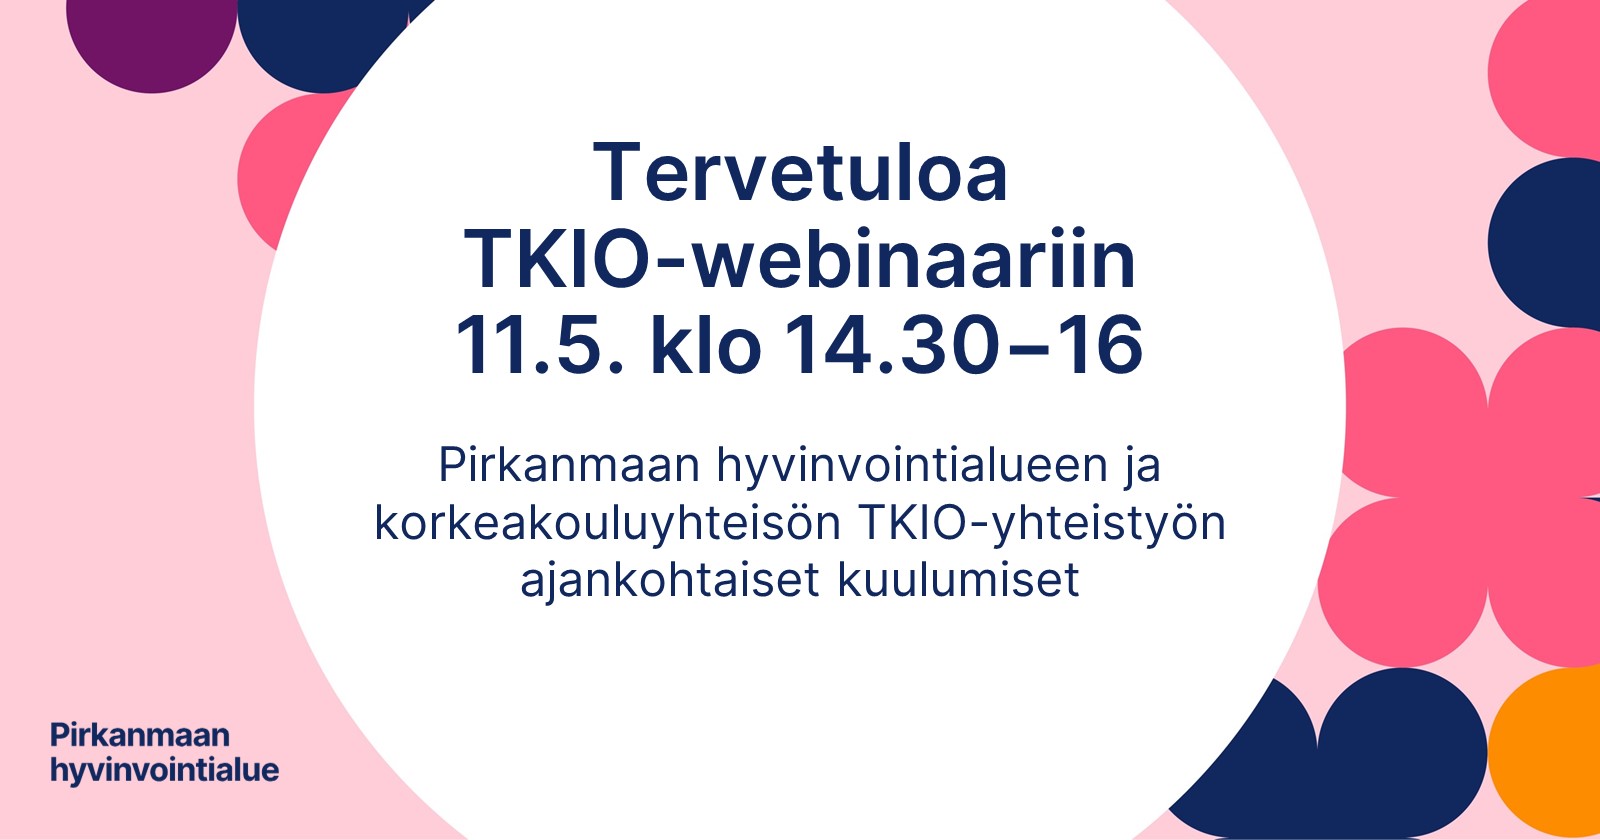 Kuvassa teksti: Tervetuloa TKIO-webinaariin 11.5. klo 14.30-16. Pirkanmaan hyvinvointialueen ja korkeakouluyhteisön TKIO-yhteistyön ajankohtaiset kuulumiset